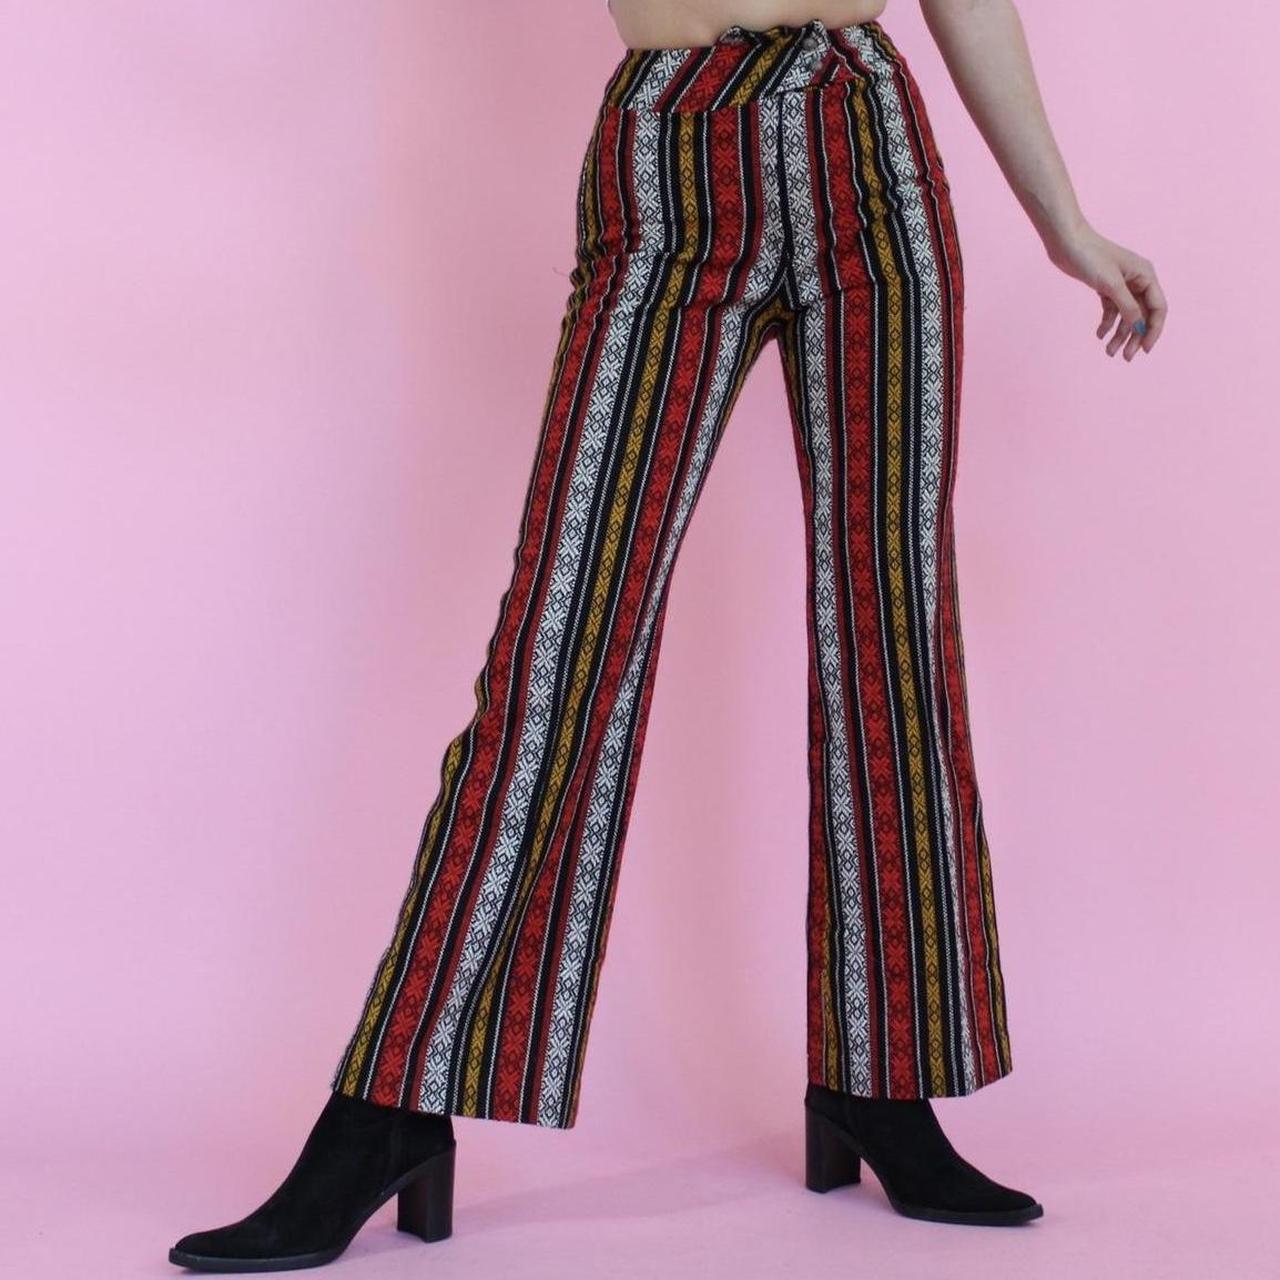 70s vintage flare pants bell bottom 🌈 Vintage 1970s... - Depop